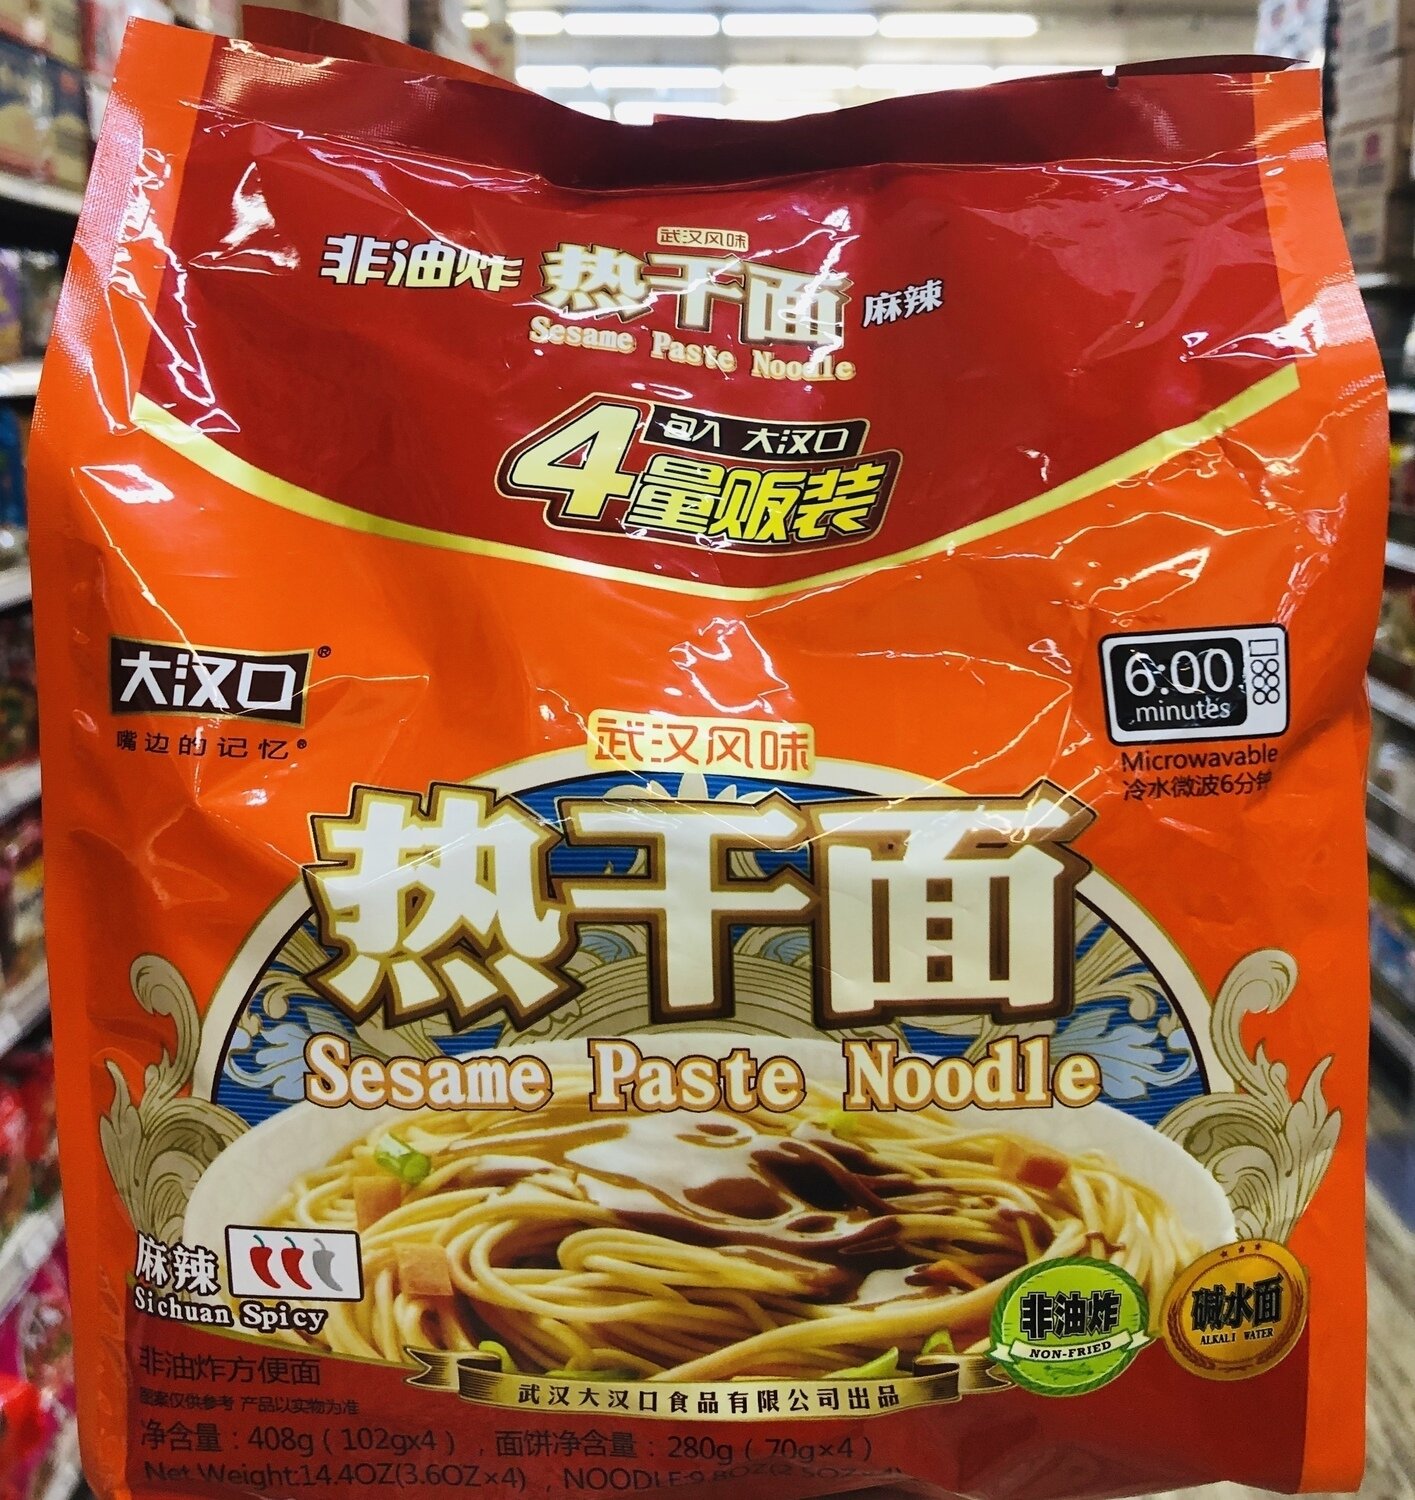 大汉口武汉热干面麻辣味 ​Sesame Paste Noodle SiChuan Spicy ~408g（102g*4)​